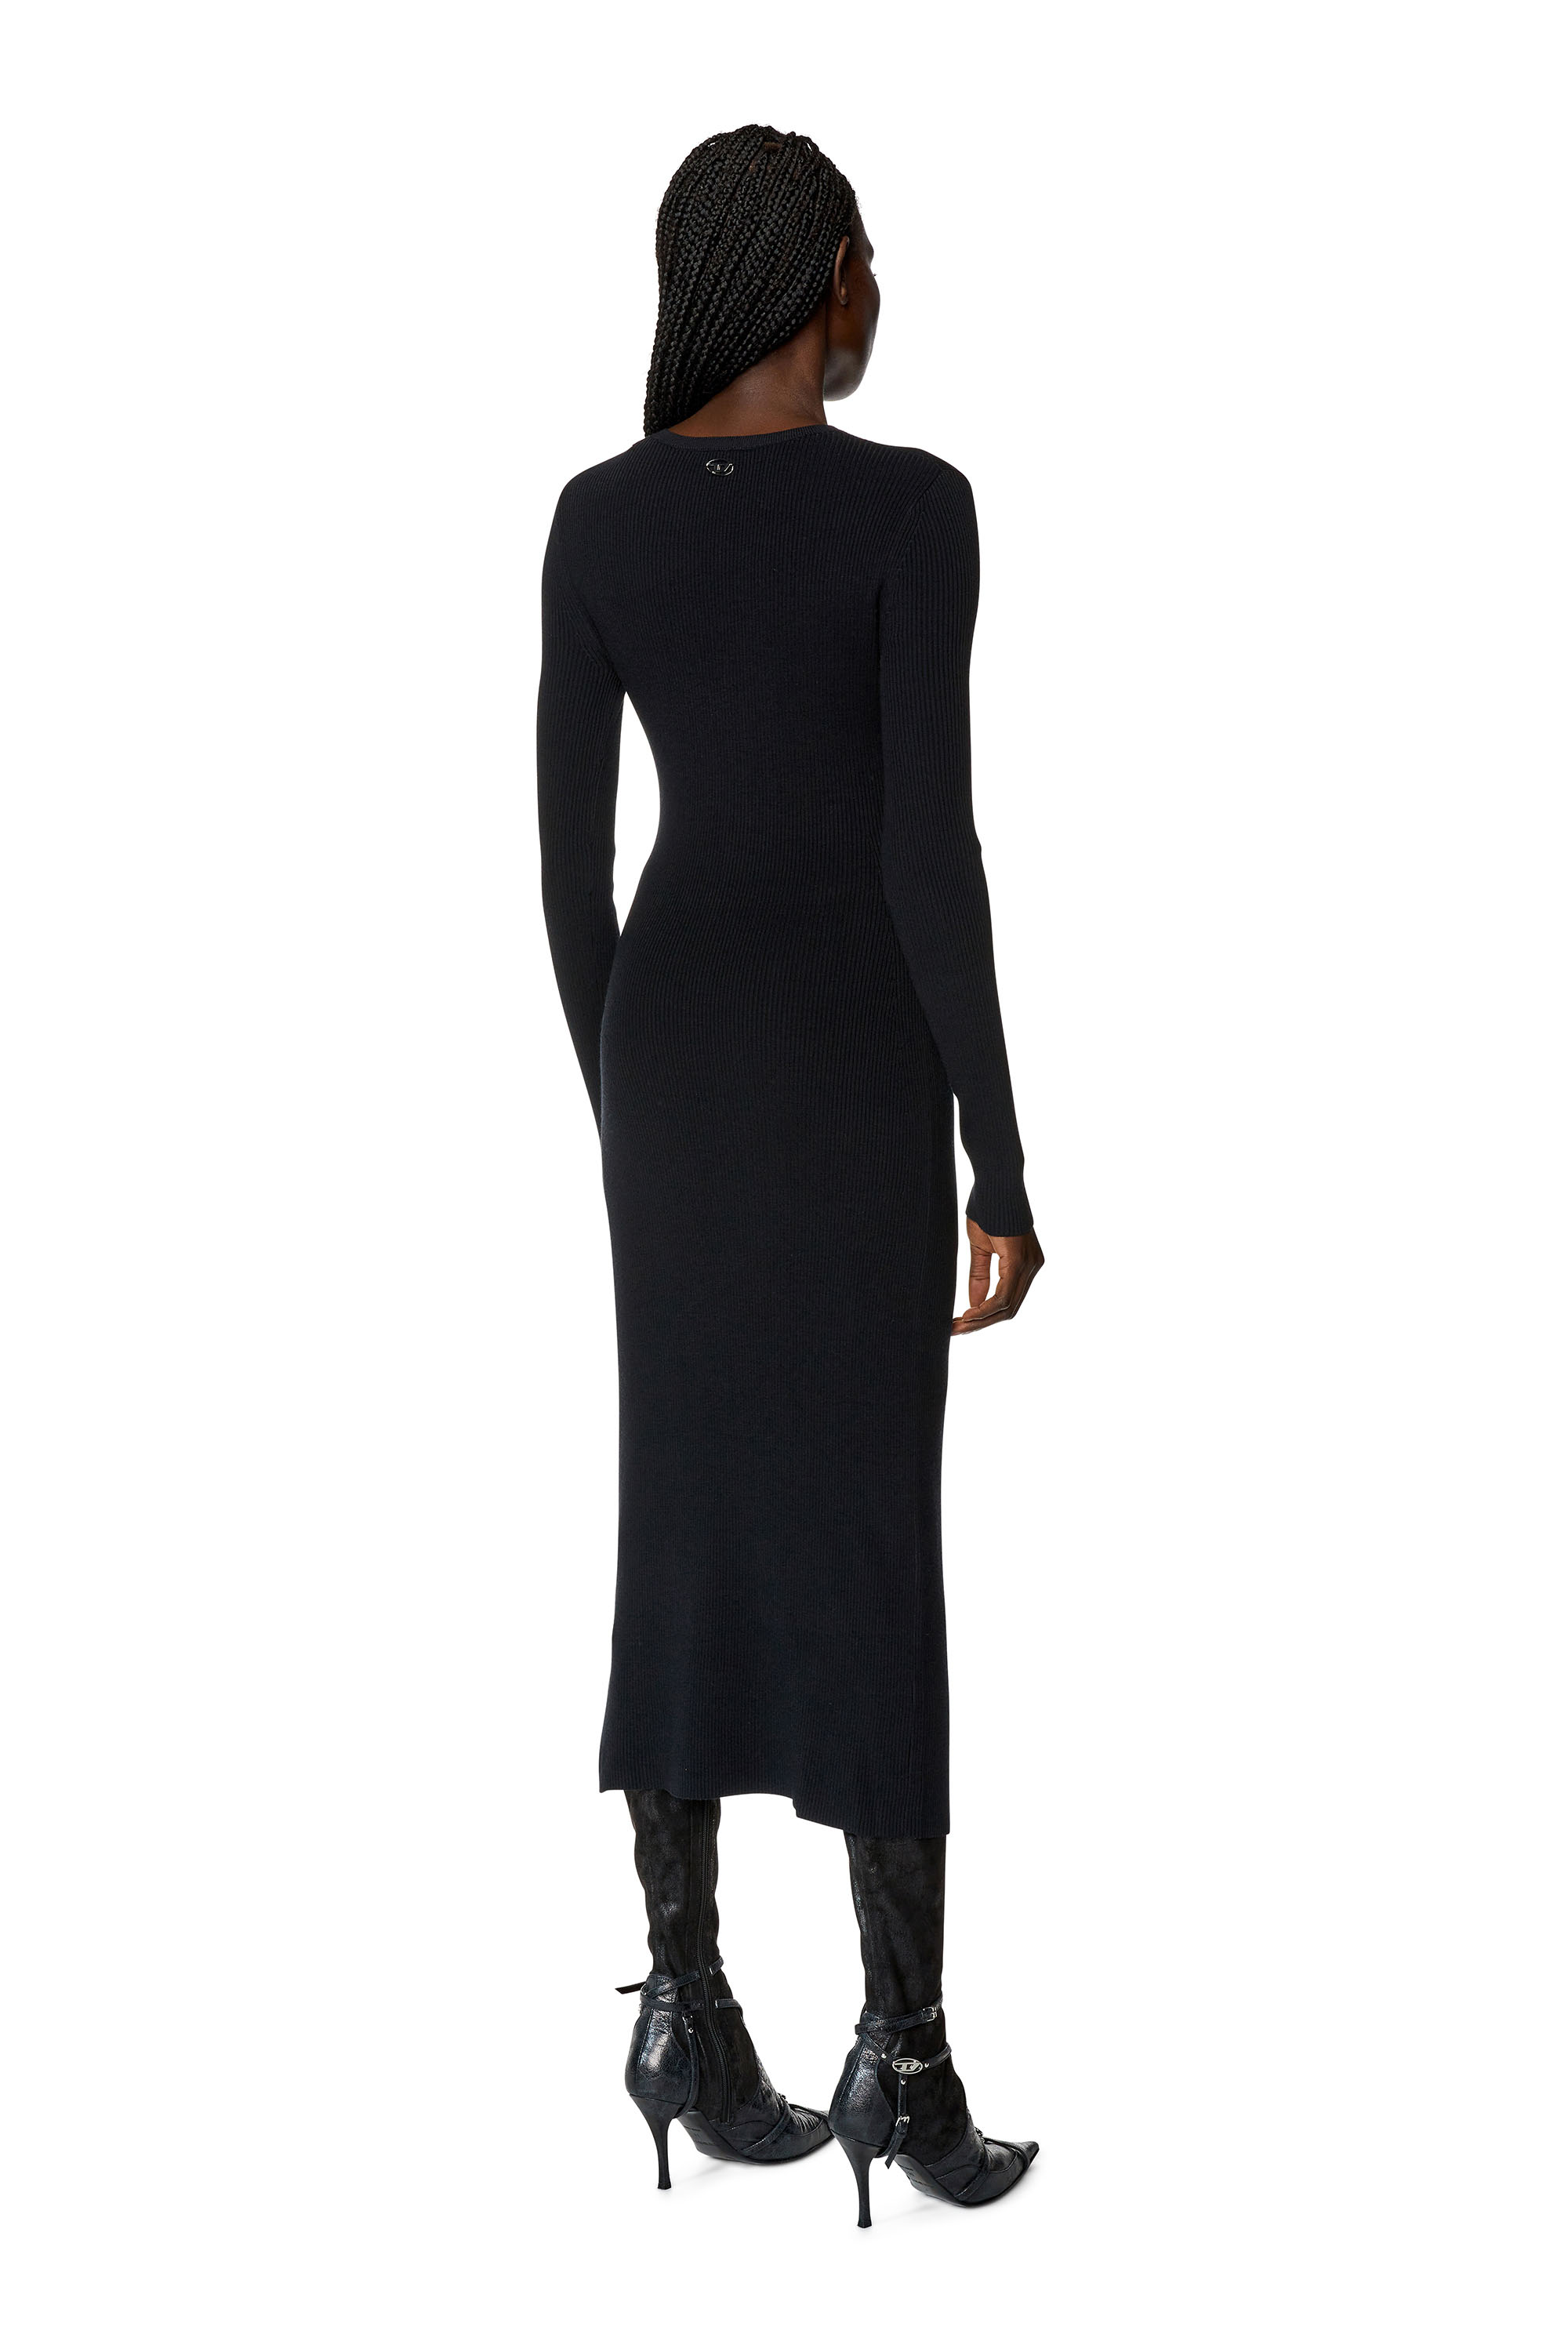 Diesel - Kleid aus Wollmischgewebe mit Cutout - Kleider - Damen - Schwarz